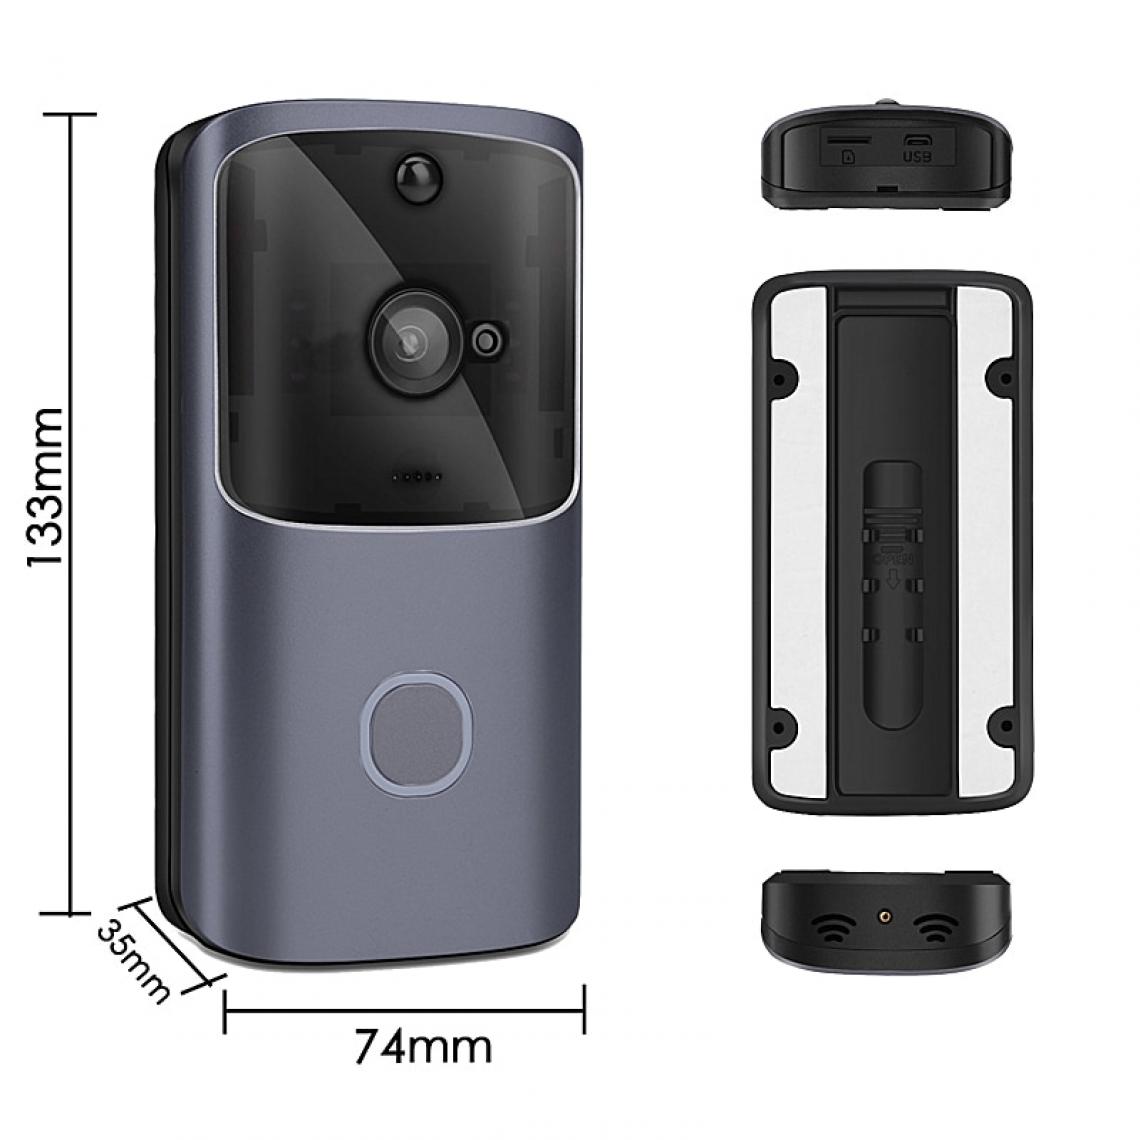 Universal - M10 sonnette wifi talkie-walkie intelligent IP contrôle d'accès téléphone porte haut-parleur caméra IR alarme sans fil caméra de sécurité | sonnette (gris) - Sonnette et visiophone connecté